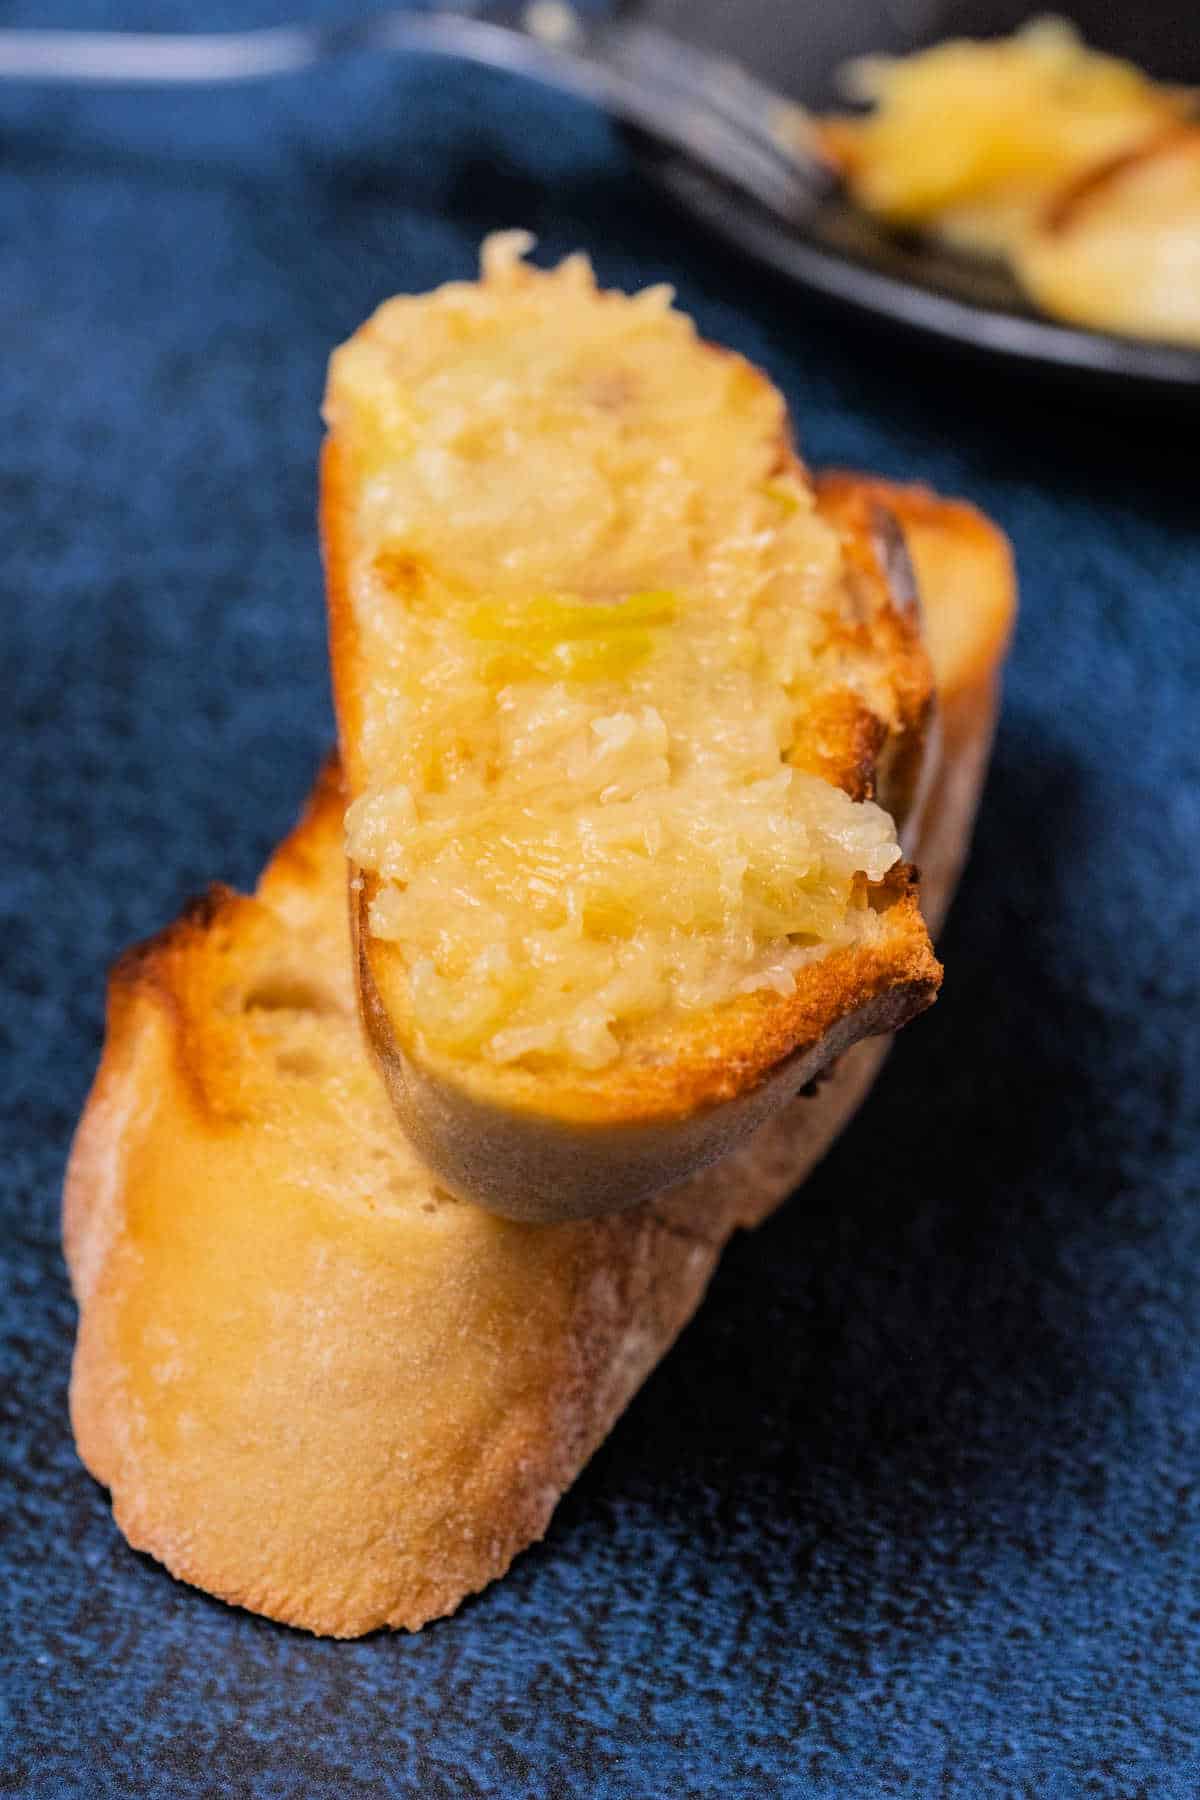 Roasted garlic spread on toast.